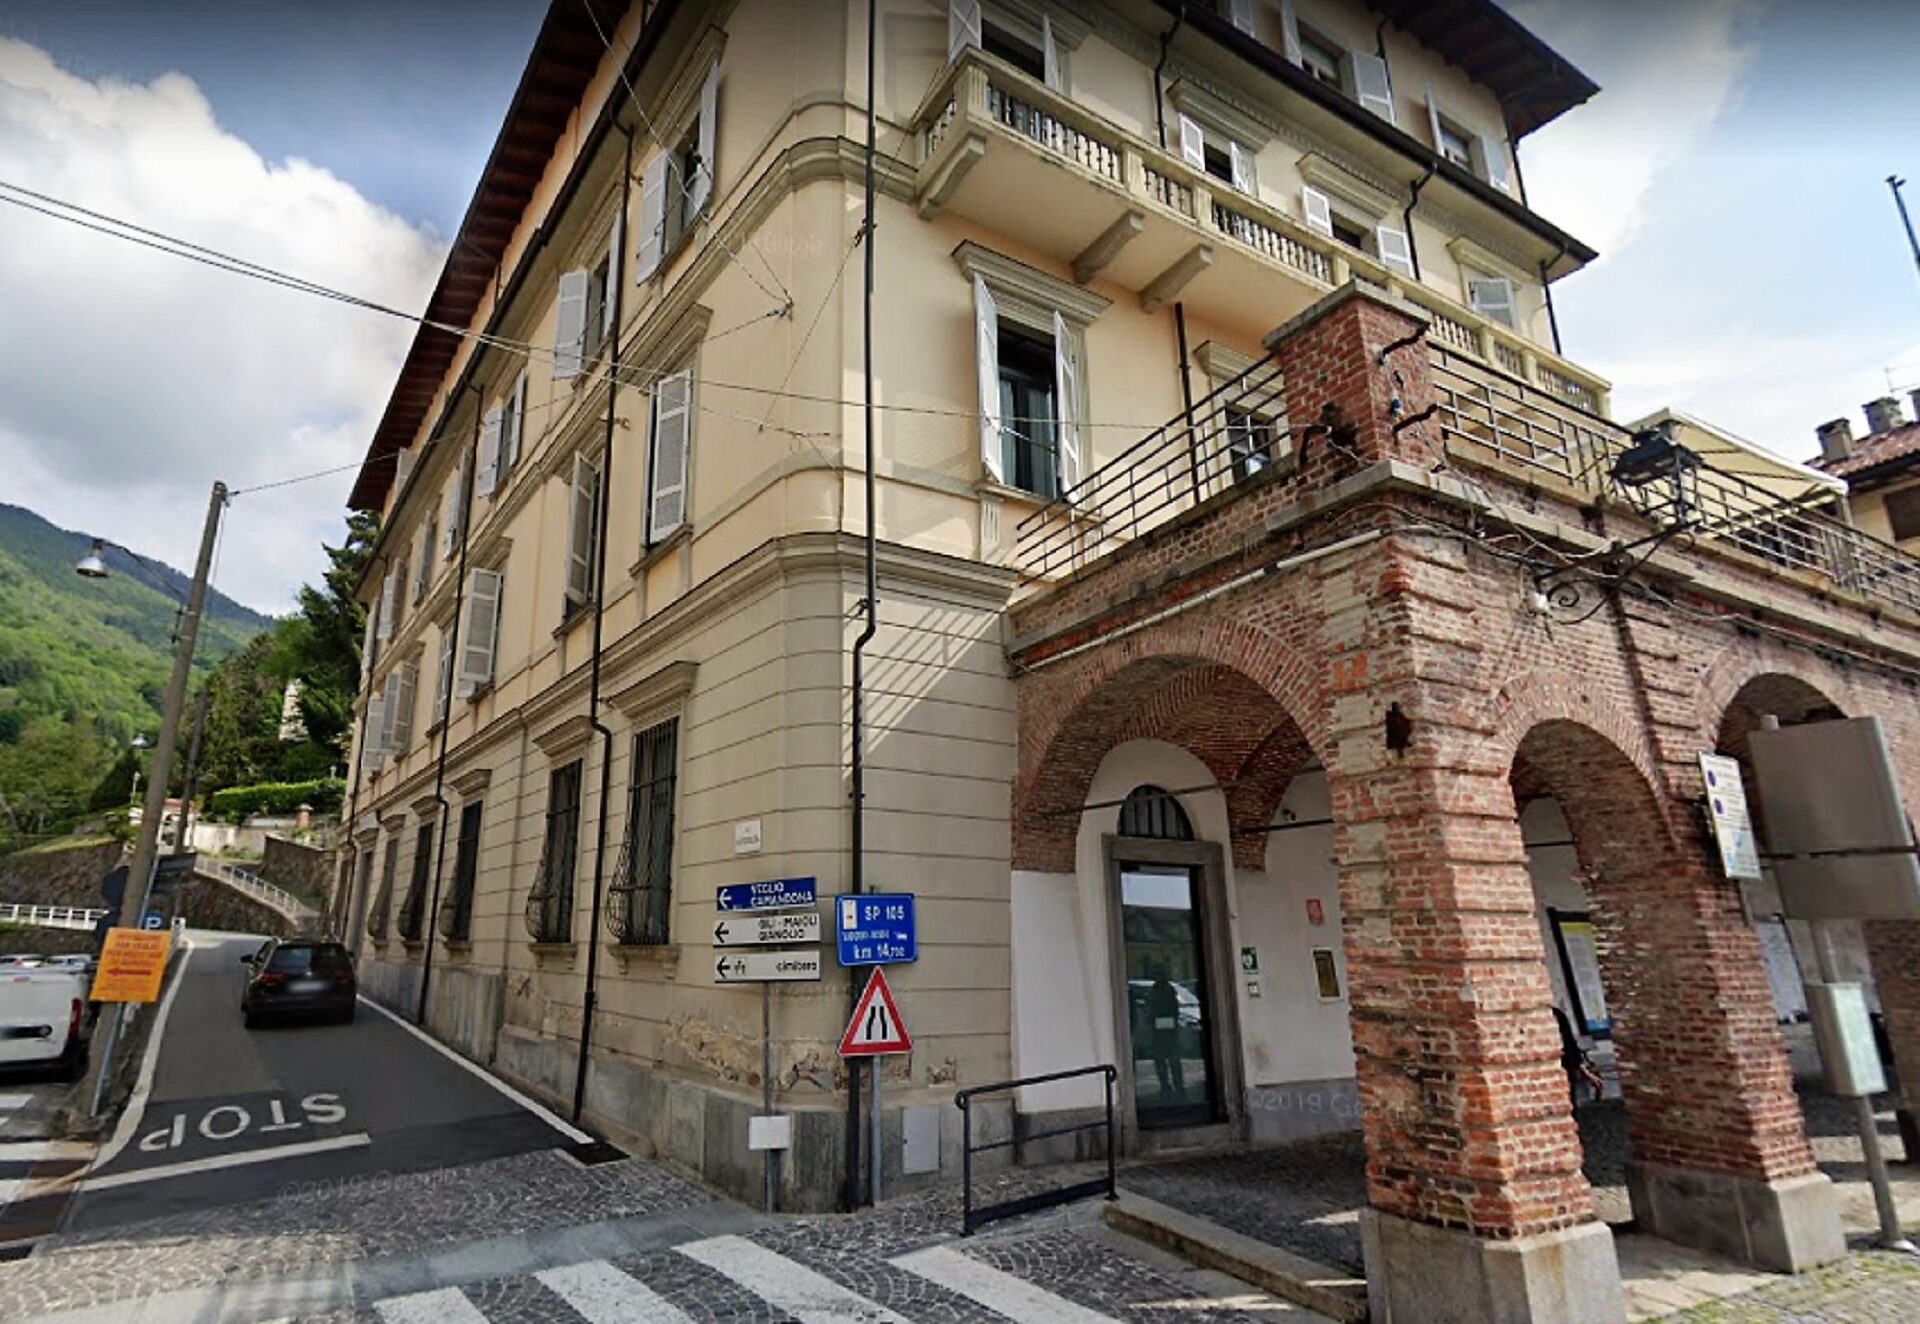 Case Di Riposo Padova : Pontelongo, Casa di riposo: 2 milioni per altri 30 posti letto